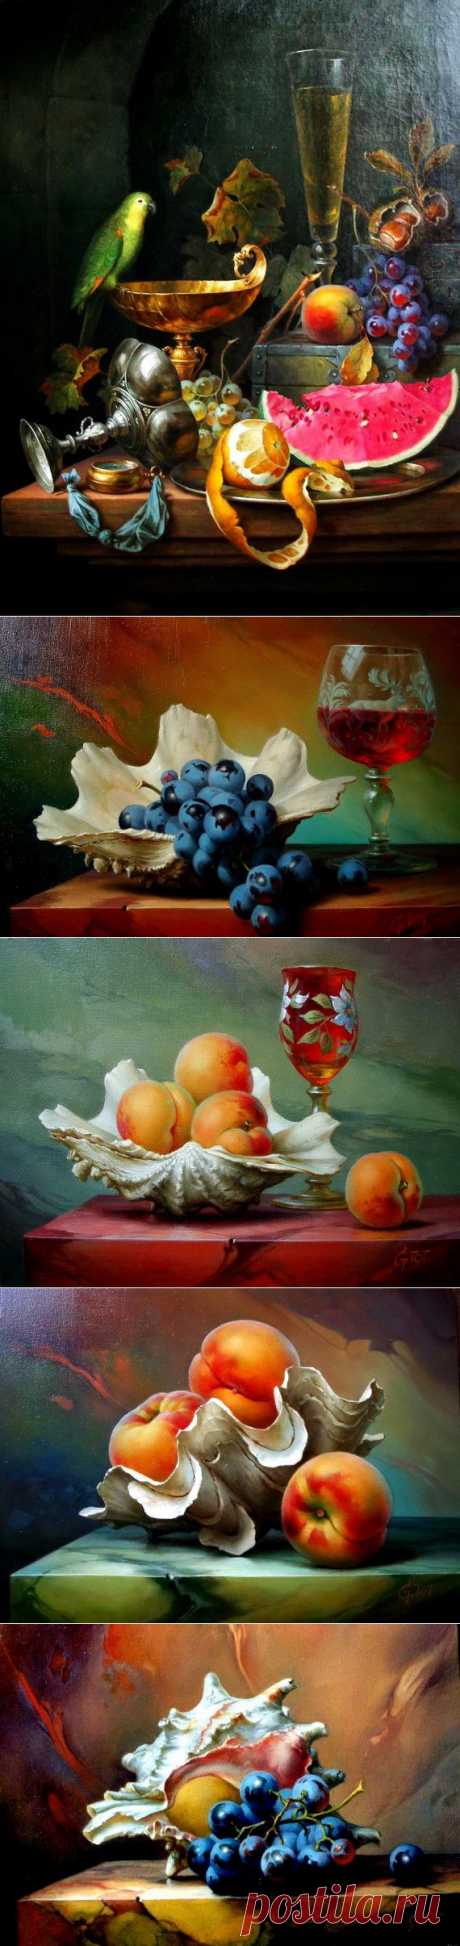 Натюрморты с вином и фруктами от венгерского художника Габора Тота. / Декупаж / Картинки для декупажа